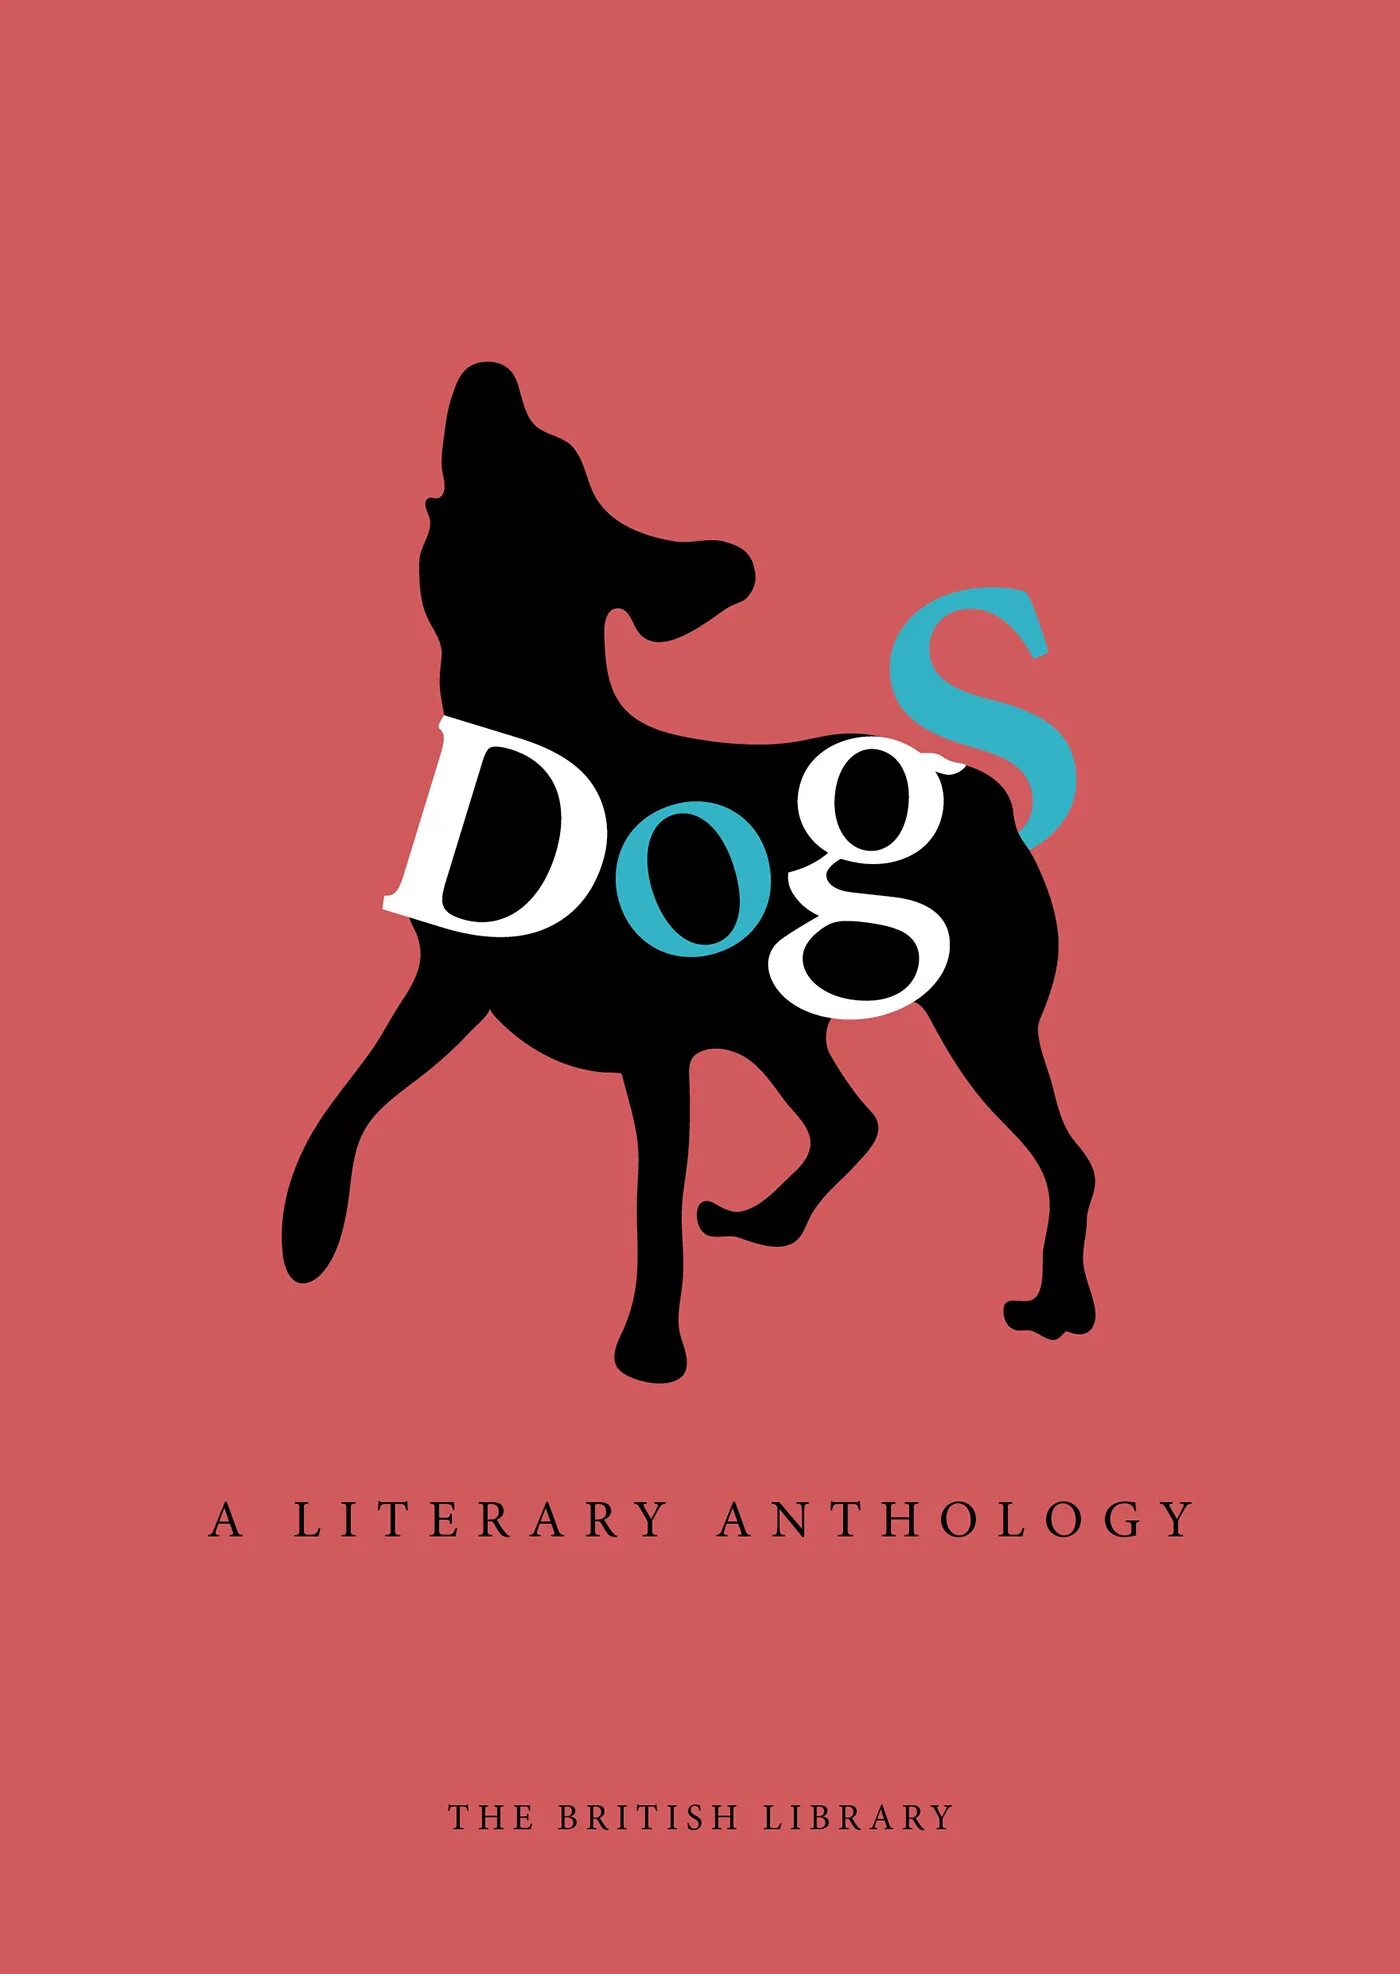 Book my dog. Обложка с собаками. Собаки в графическом дизайне. Дог. My Dog обложка.